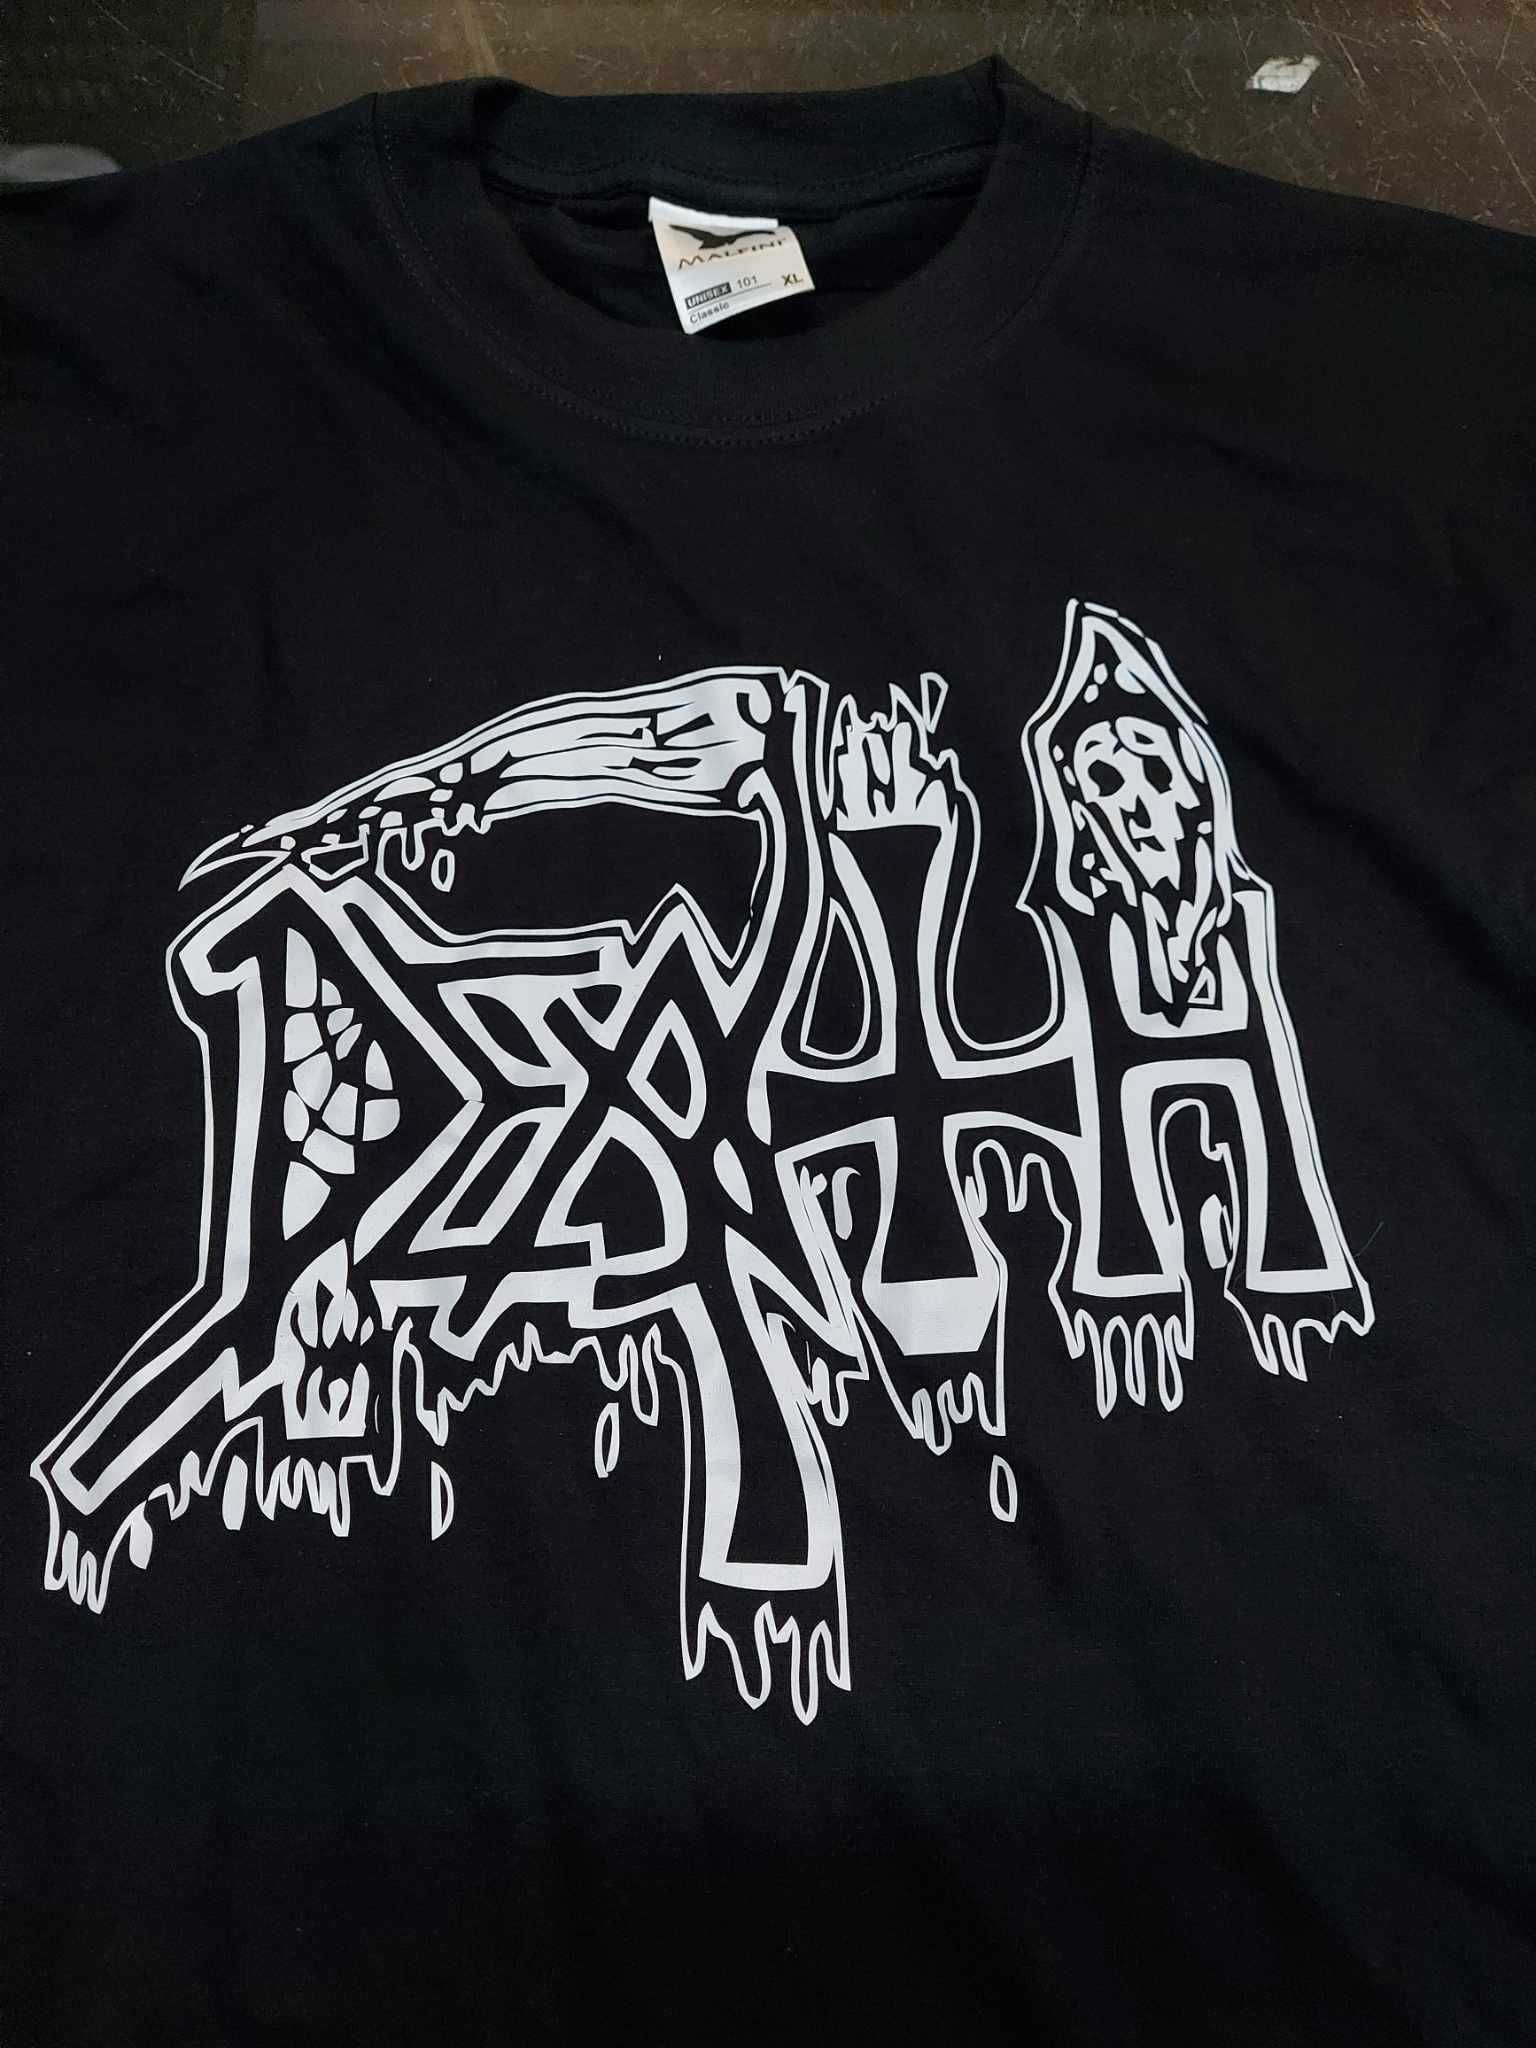 Koszulki t-shirt Death zespół band metal prezent